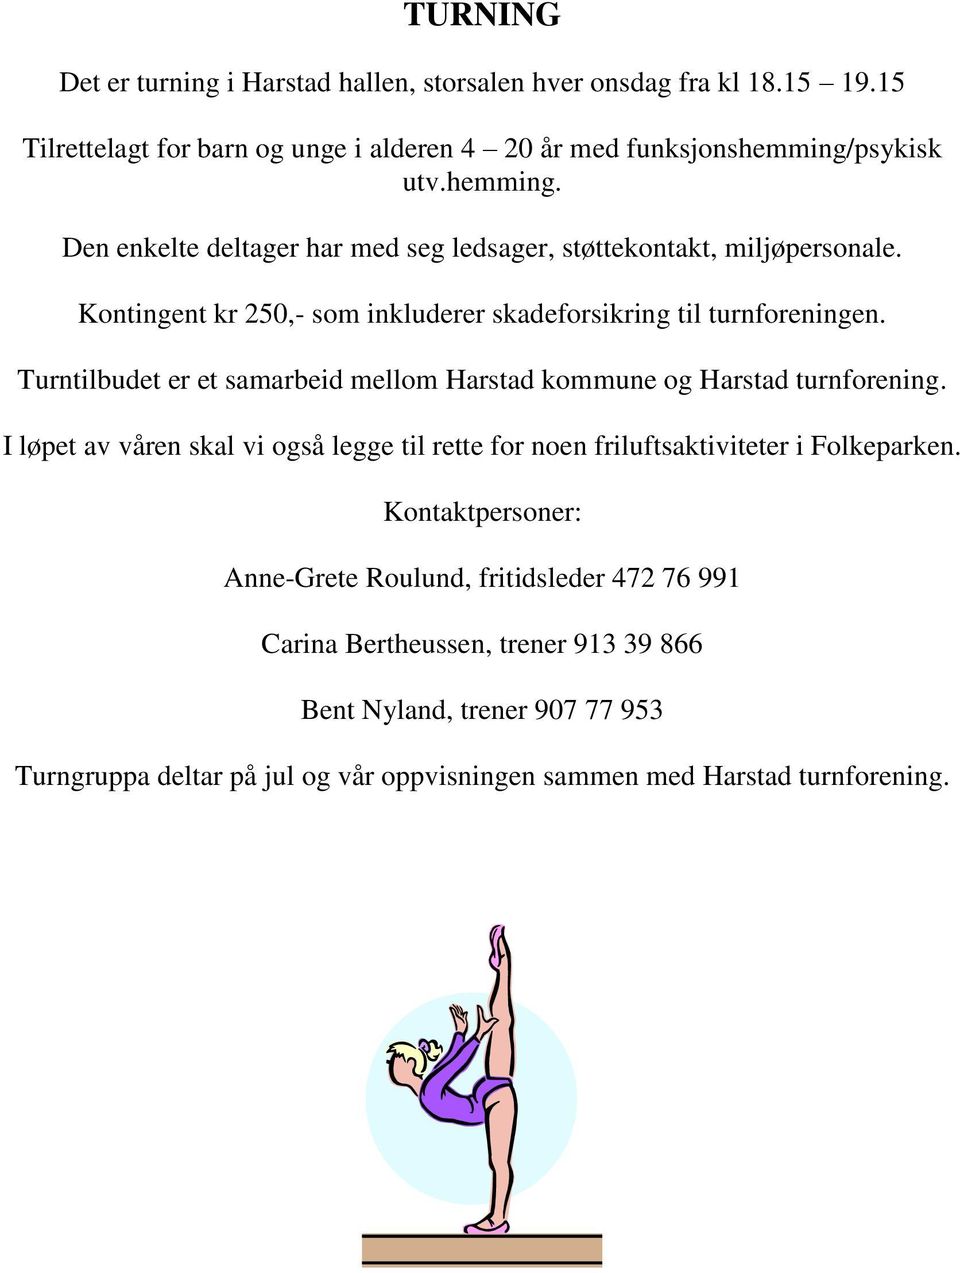 Turntilbudet er et samarbeid mellom Harstad kommune og Harstad turnforening. I løpet av våren skal vi også legge til rette for noen friluftsaktiviteter i Folkeparken.